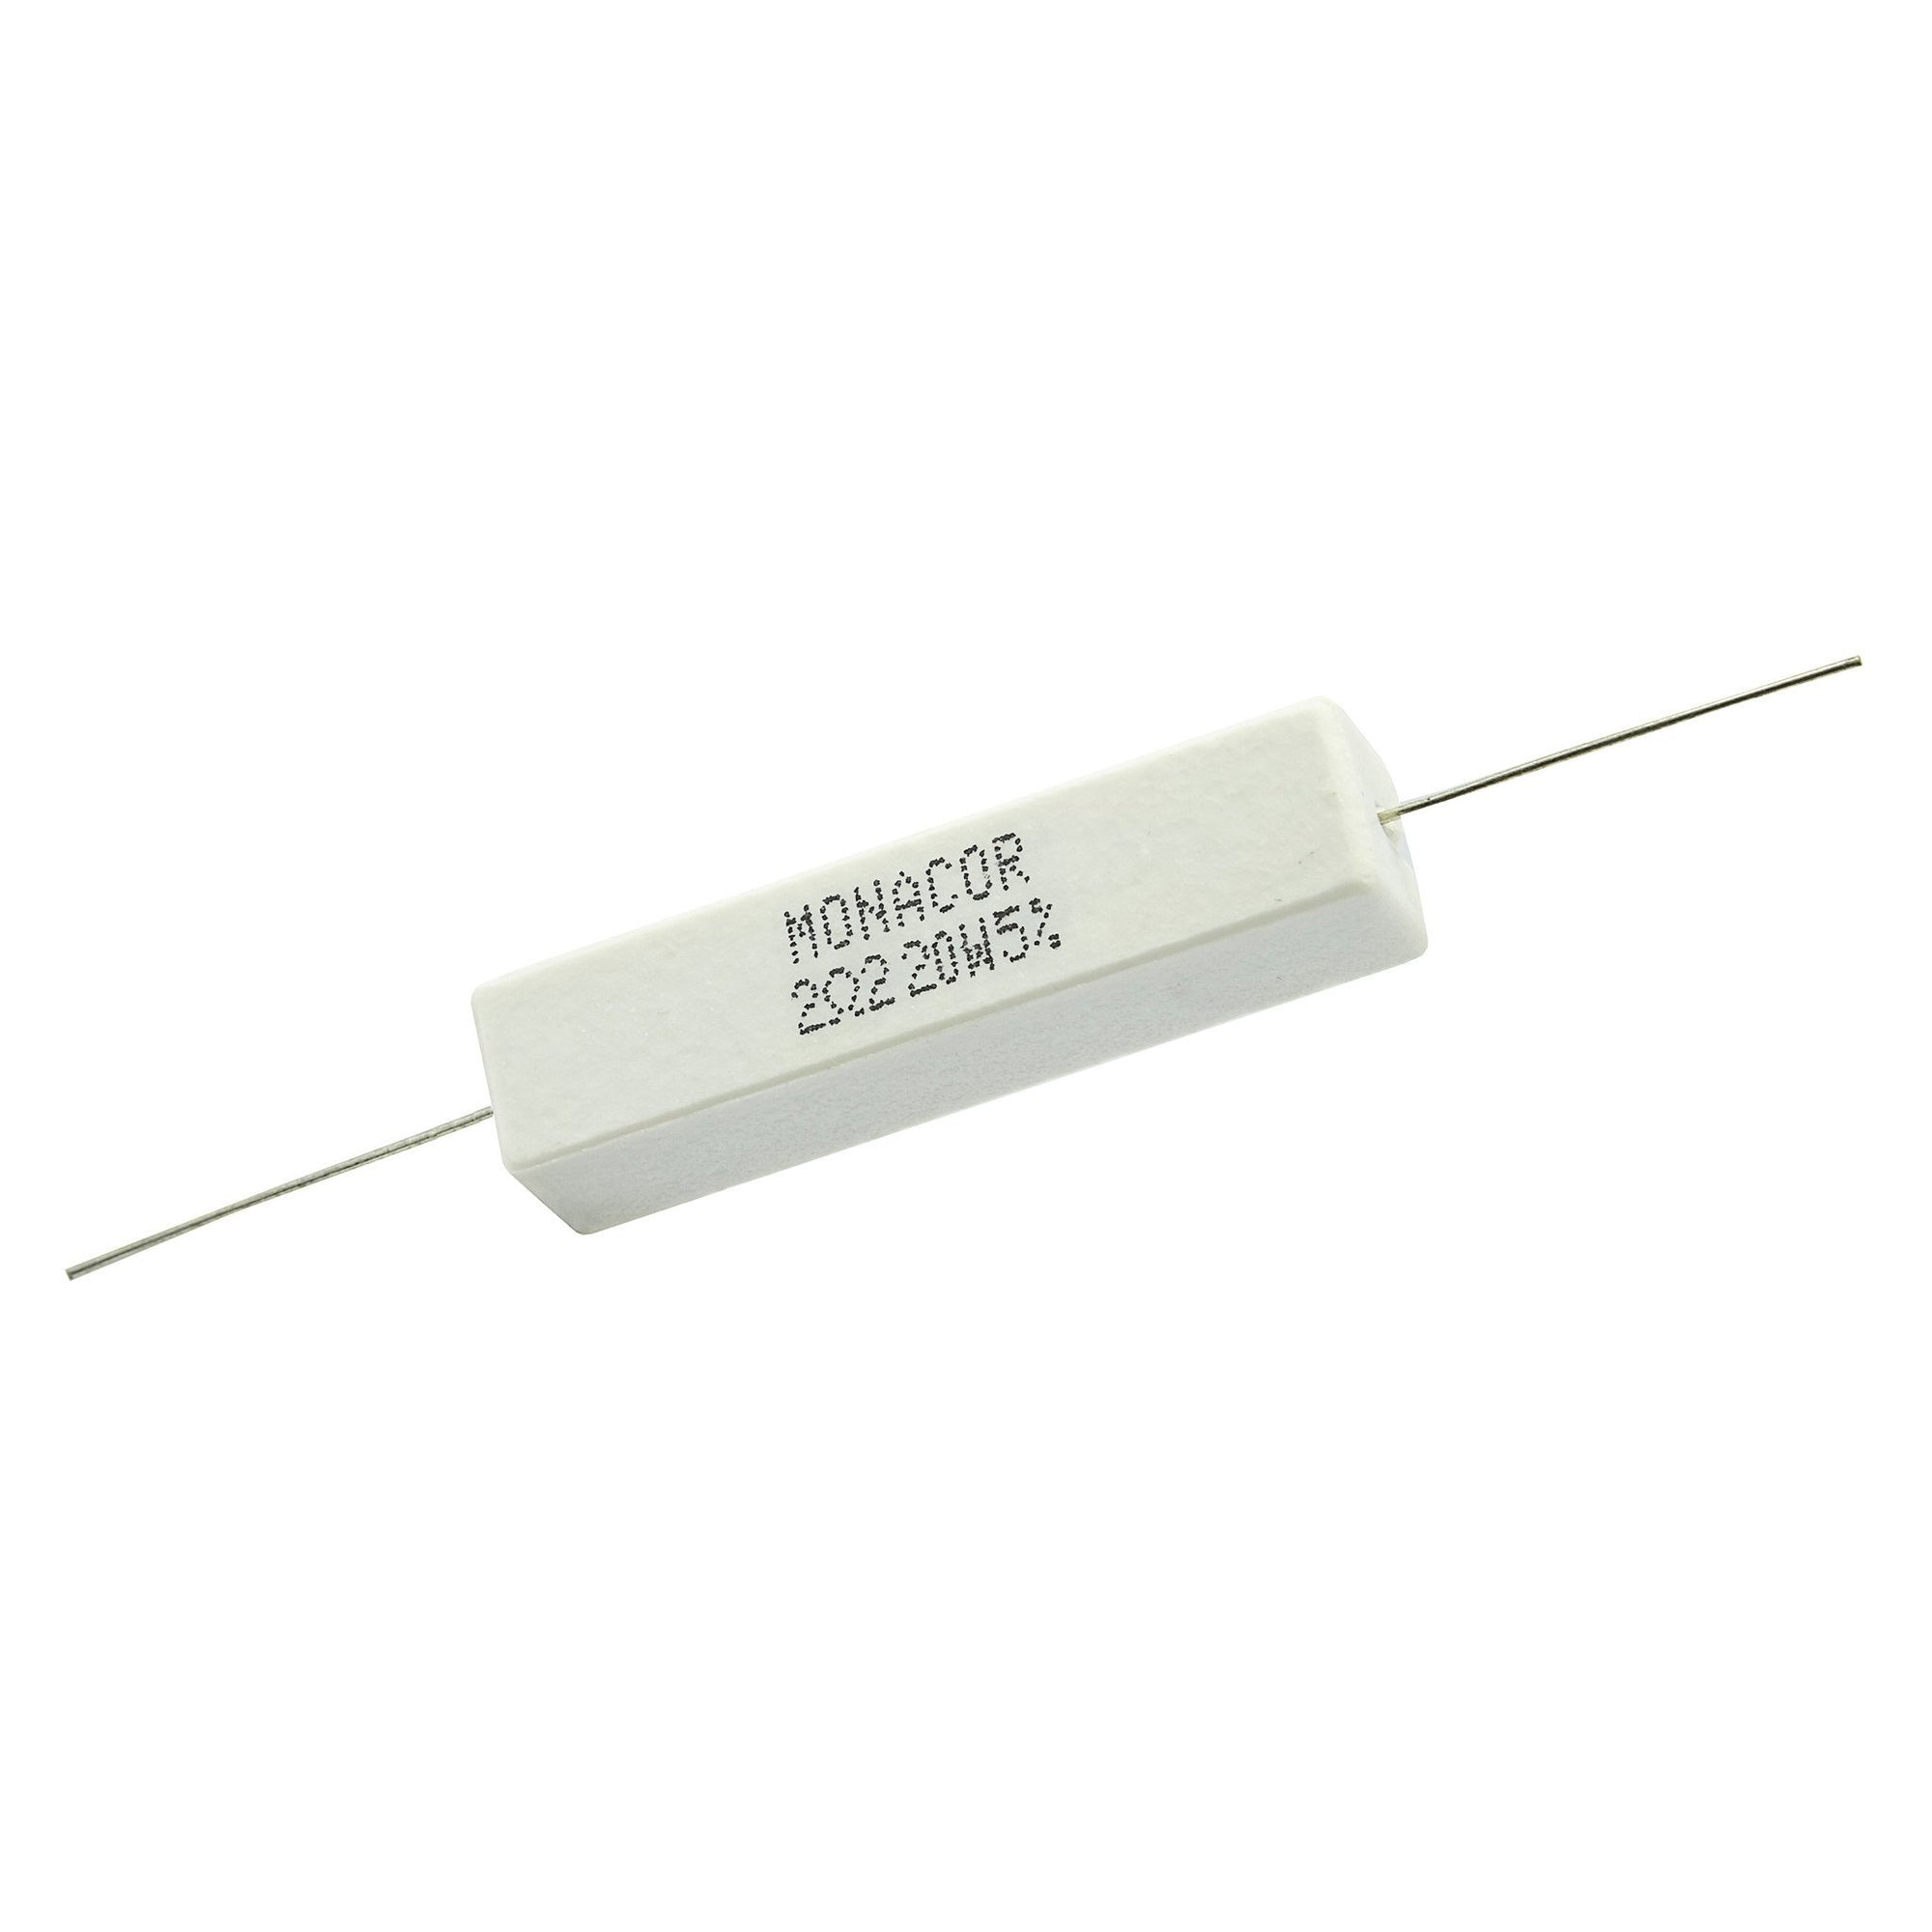 Crossover Resistors - 20 Watt